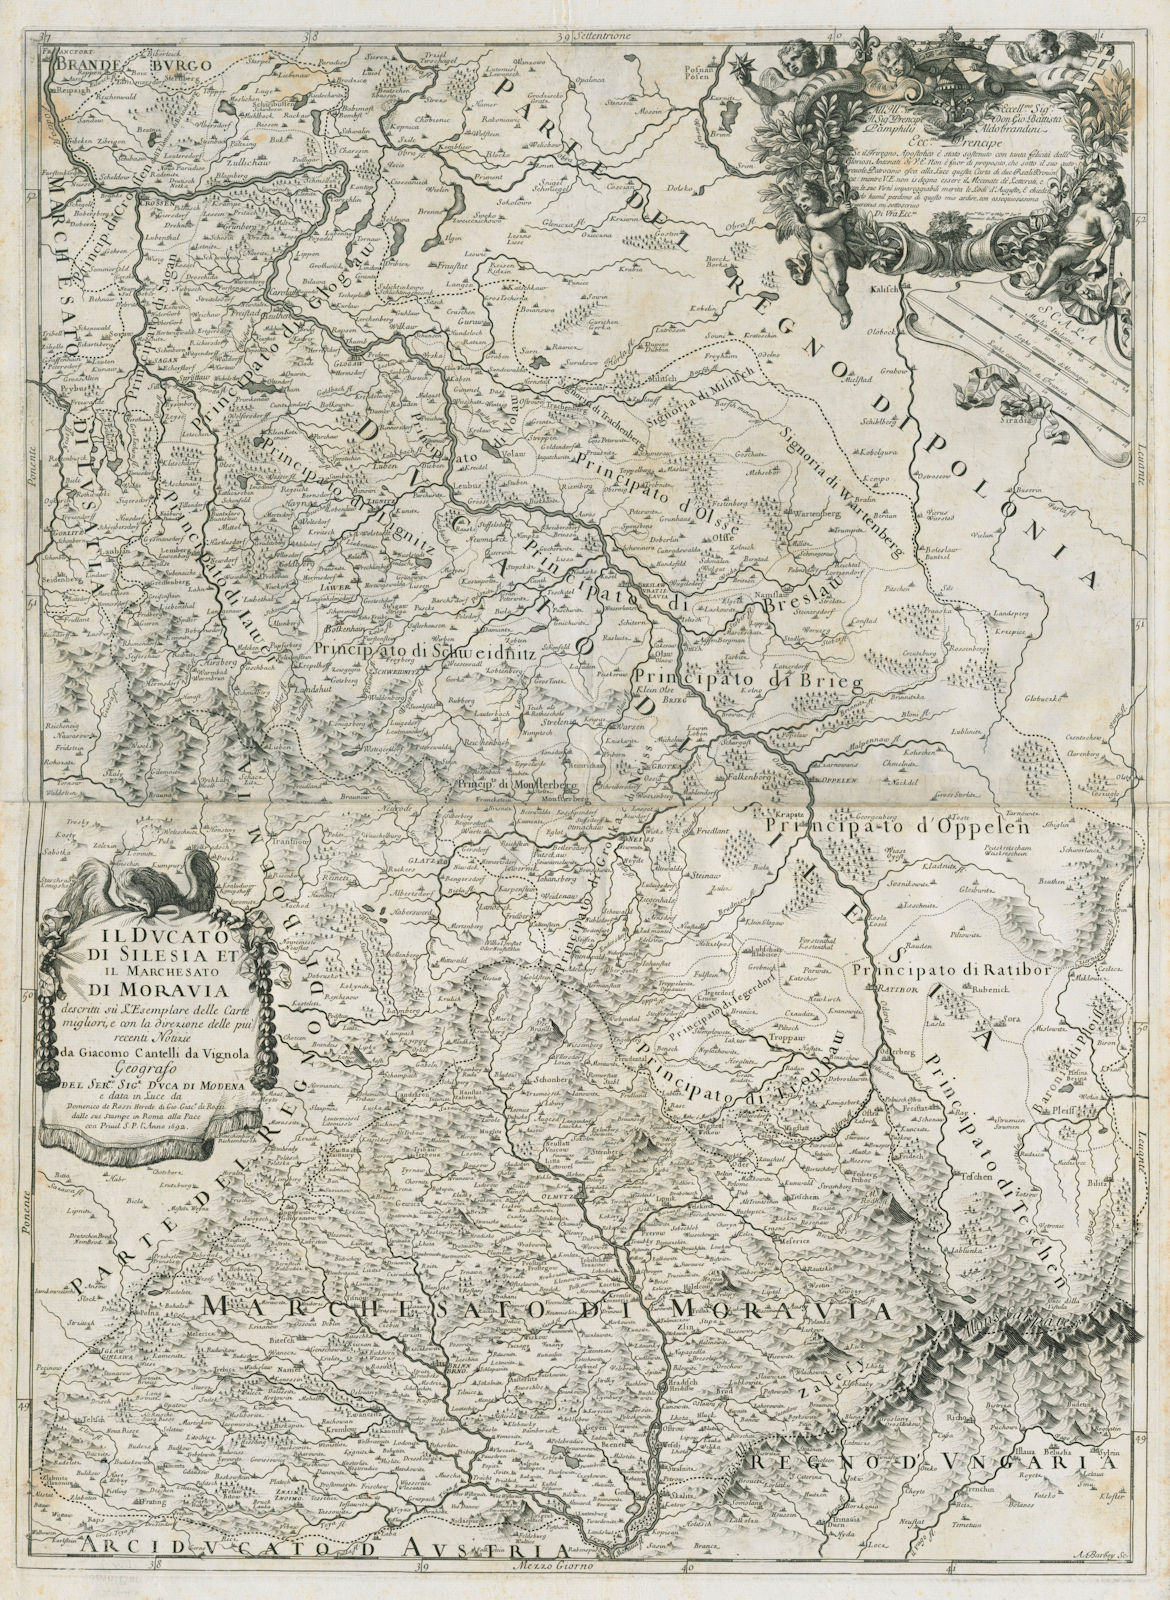 Il Ducato di Silesia et il Marchesato di Moravia. Czechia/Poland. ROSSI 1692 map